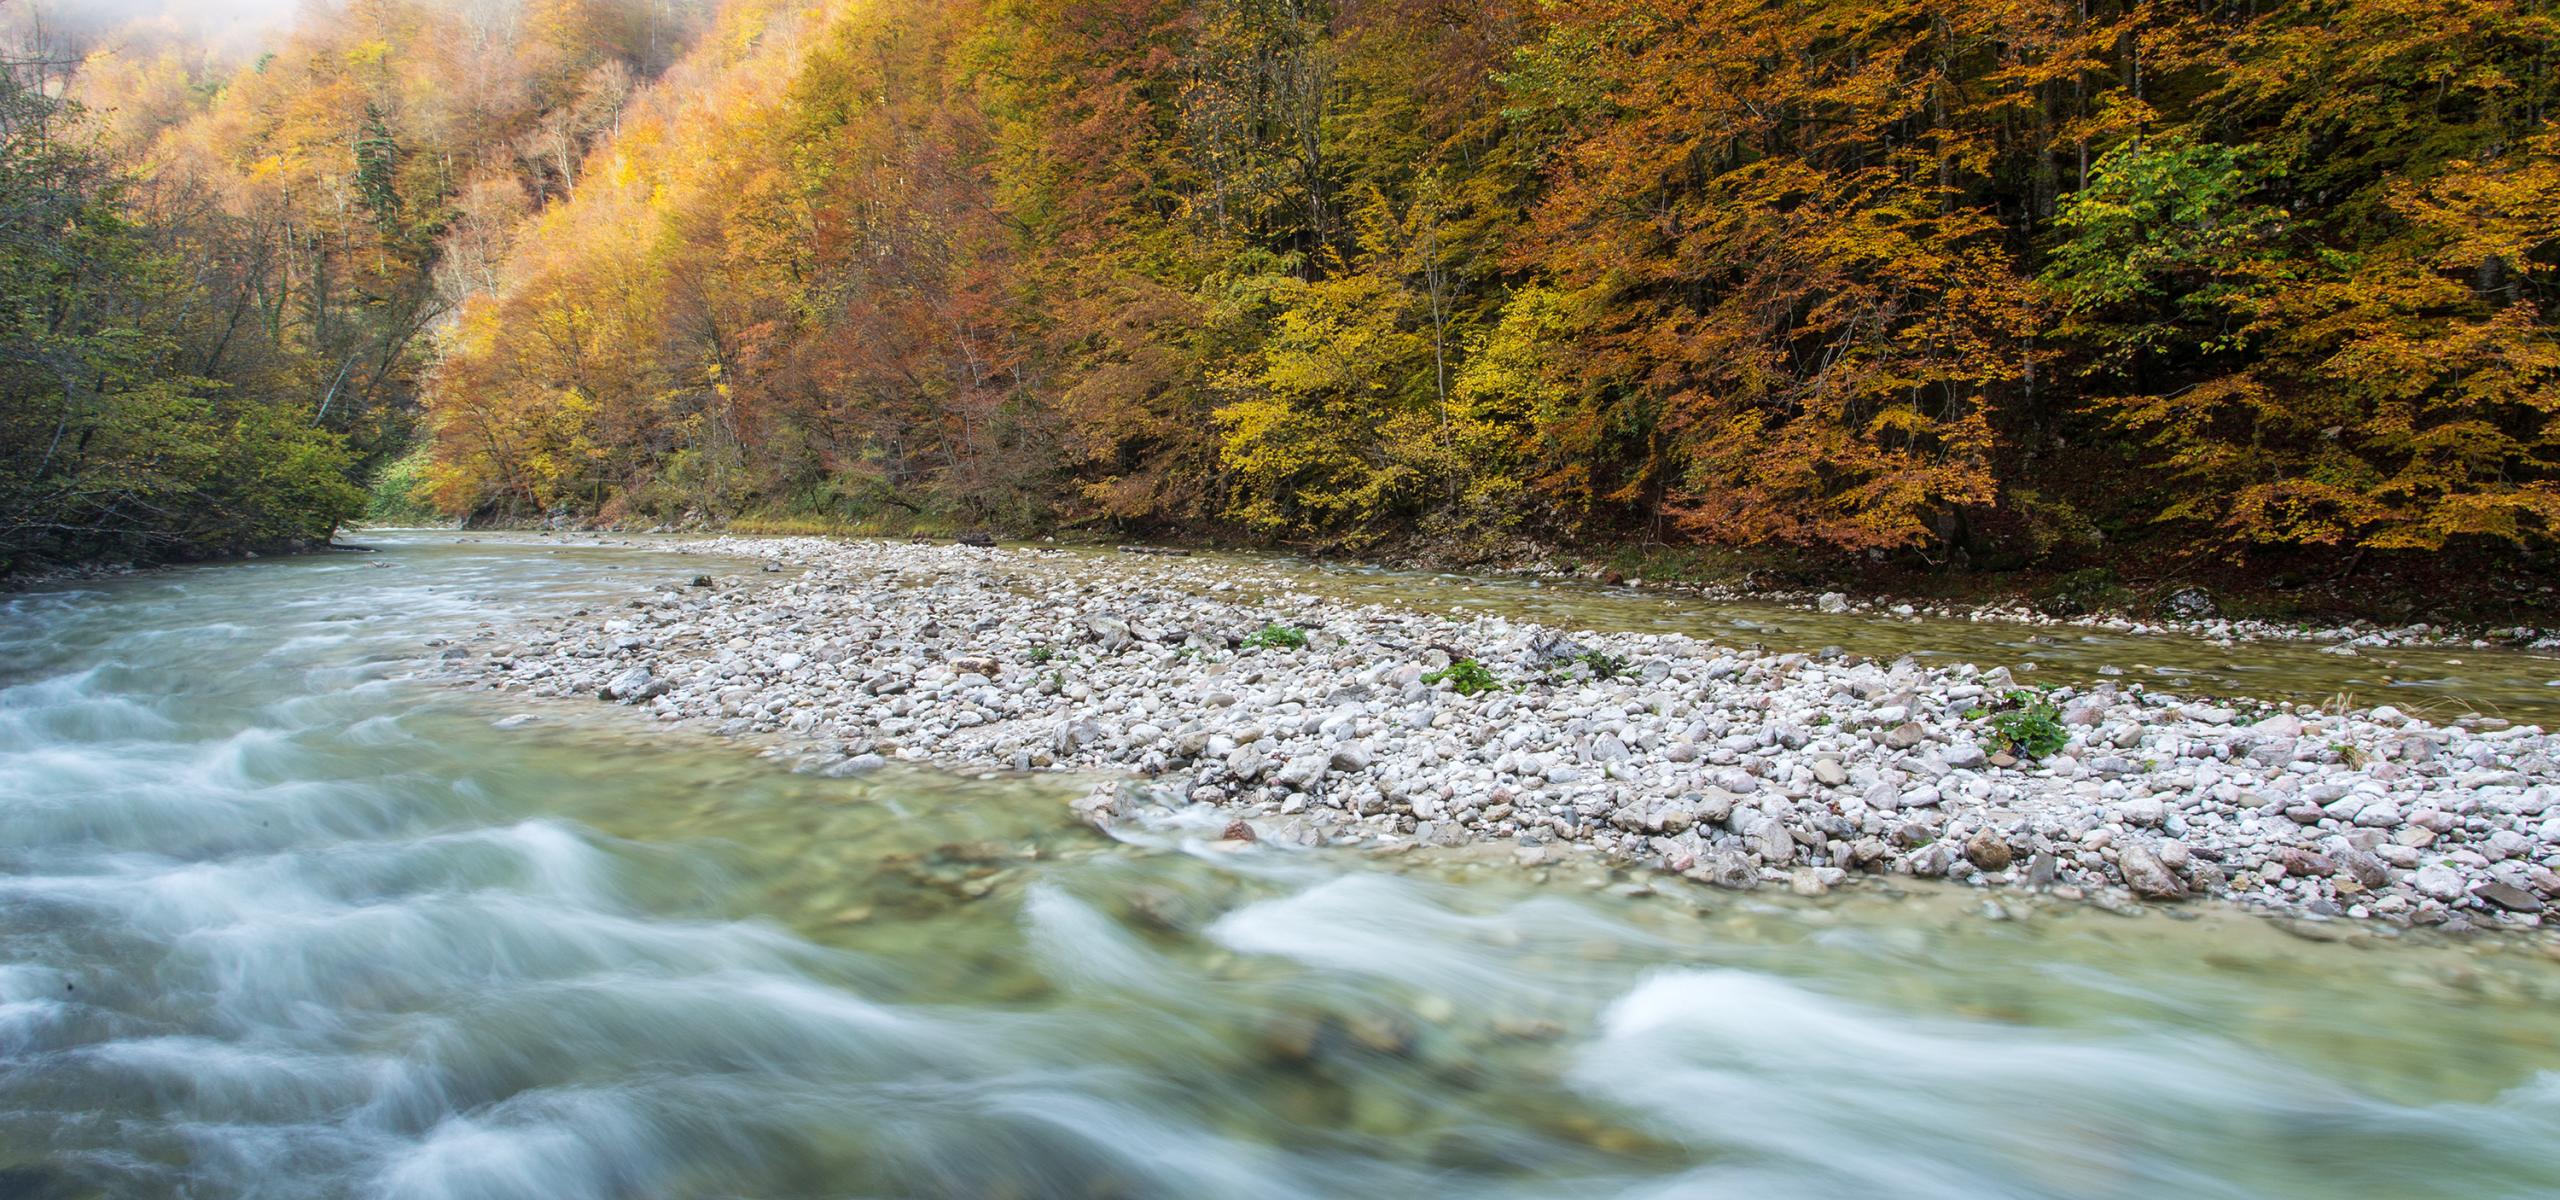 Bach umfließt eine Schotterinsel, sein Ufer begleitet ein herbstlich gefärbter Buchenwald